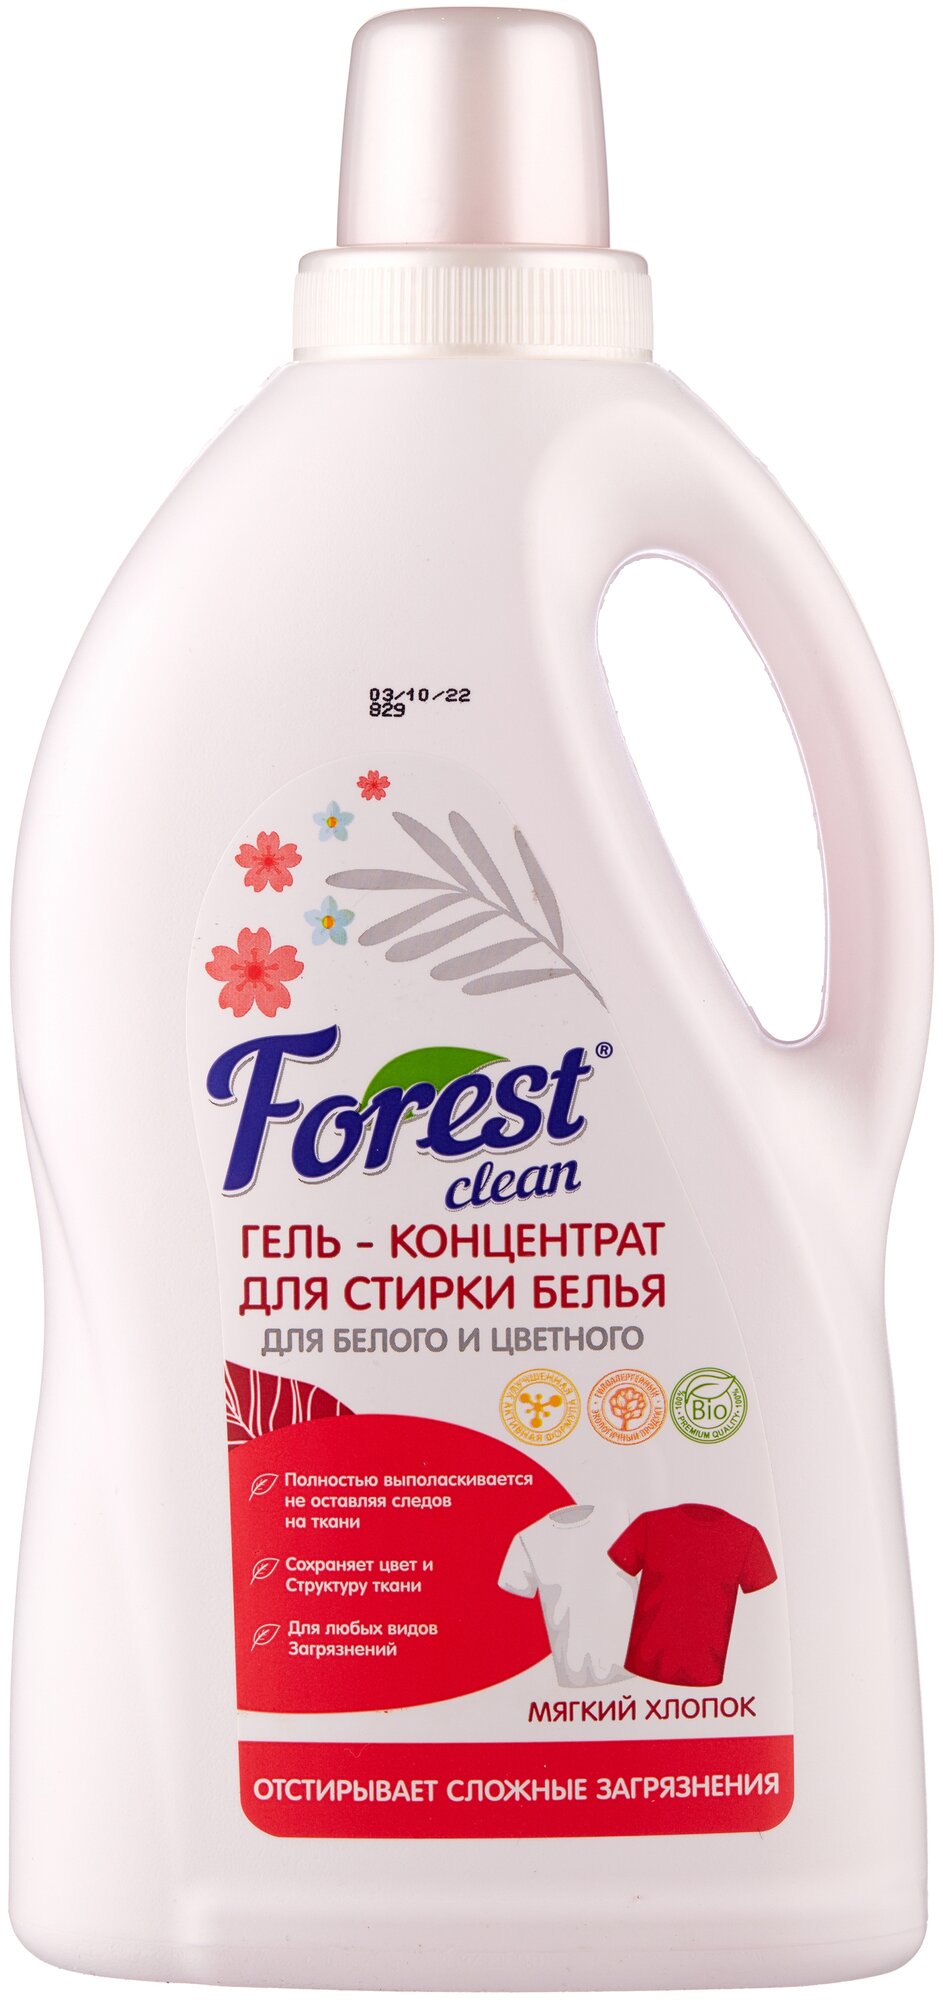 Forest clean Гель-концентрат для стирки белья "Мягкий хлопок" 1,5 л